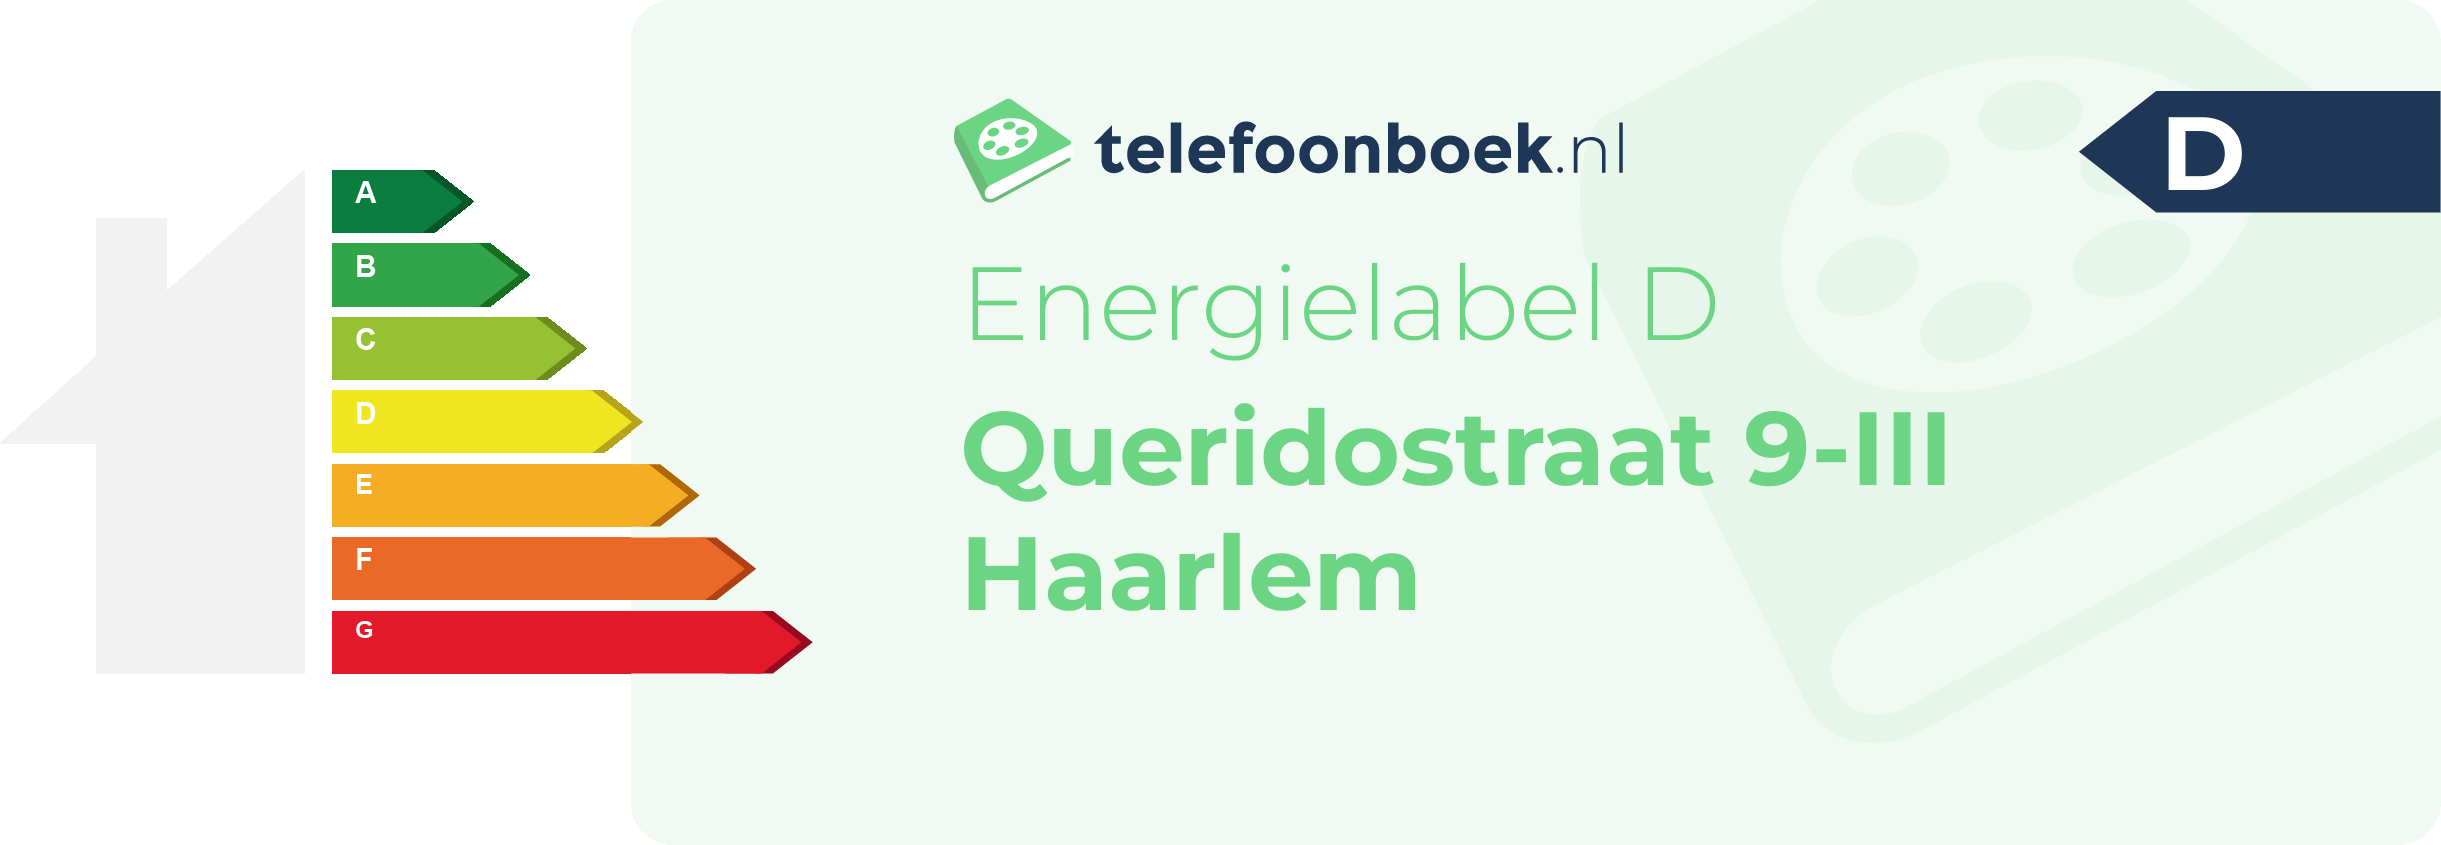 Energielabel Queridostraat 9-III Haarlem